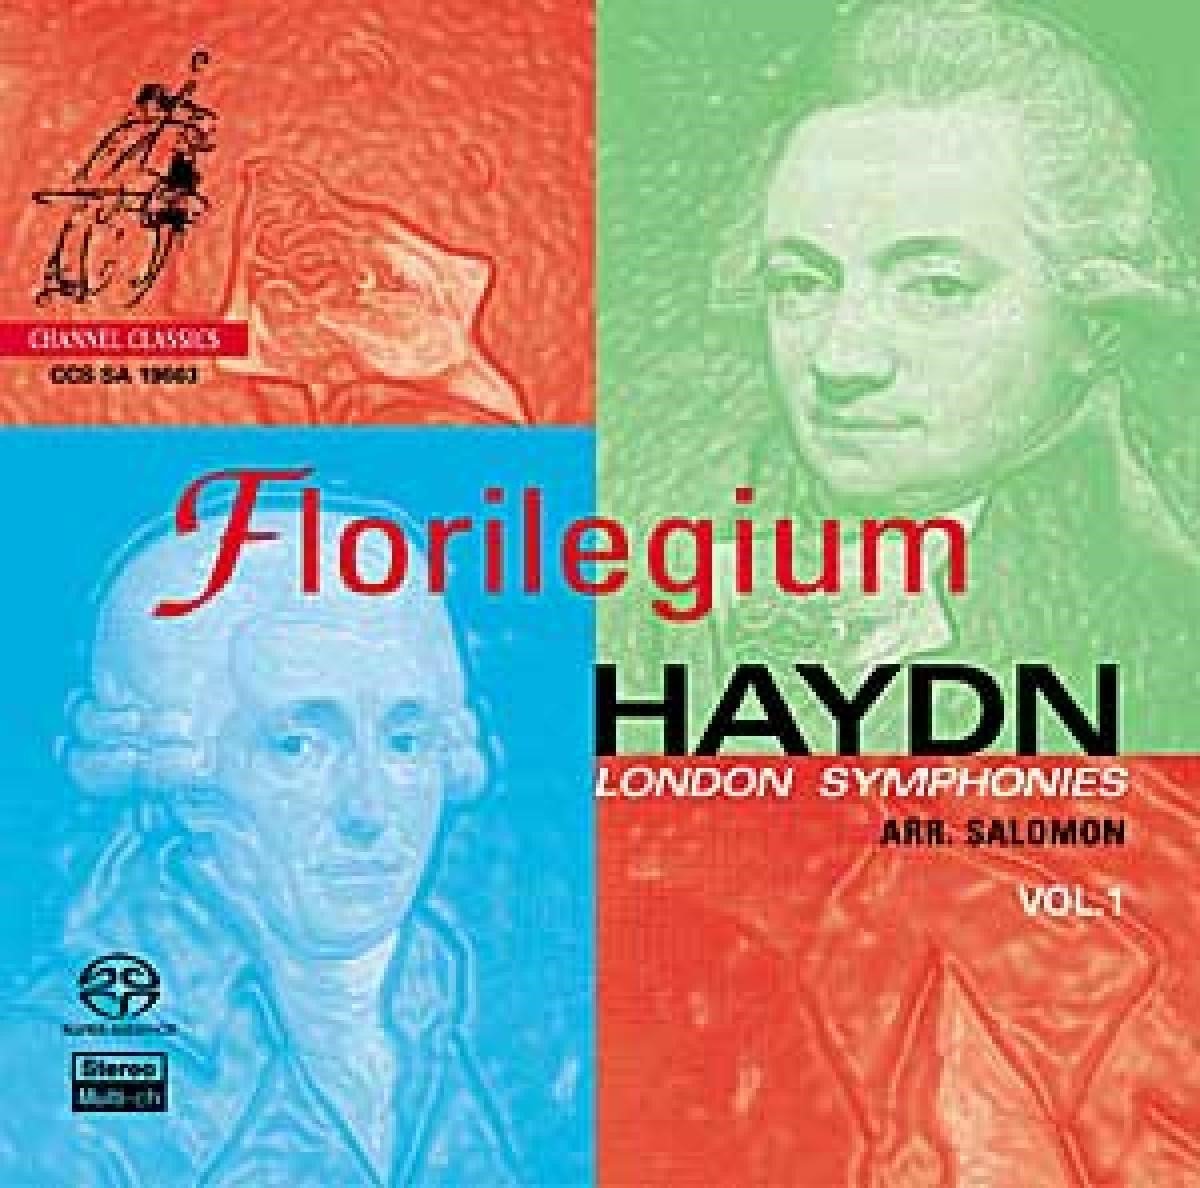 Florilegium - London Symphonies Vol. 1 (Super Audio CD) - Florilegium